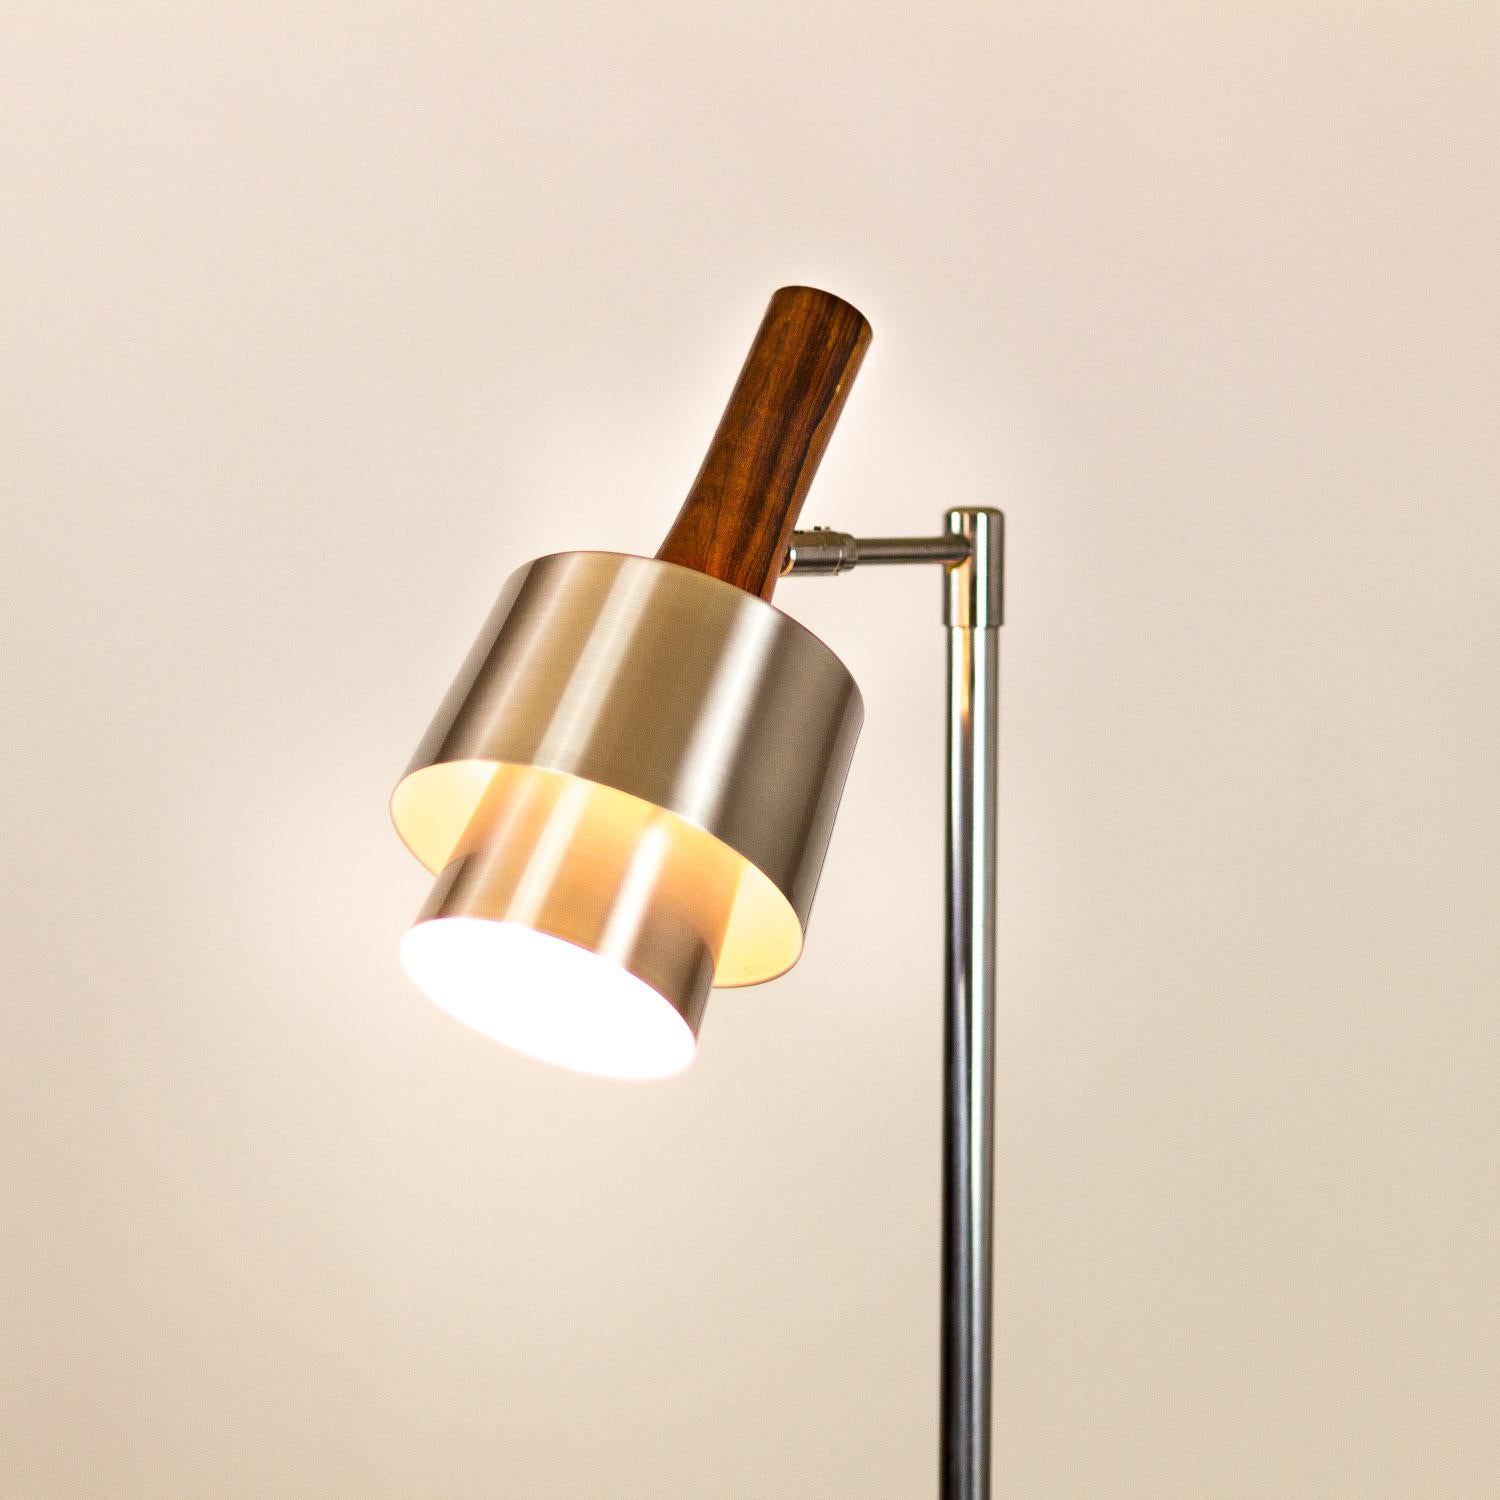 Mid-20th Century Model 294 Standard Lamp by Jo Hammerborg for Fog & Mørup, Denmark, 1960s